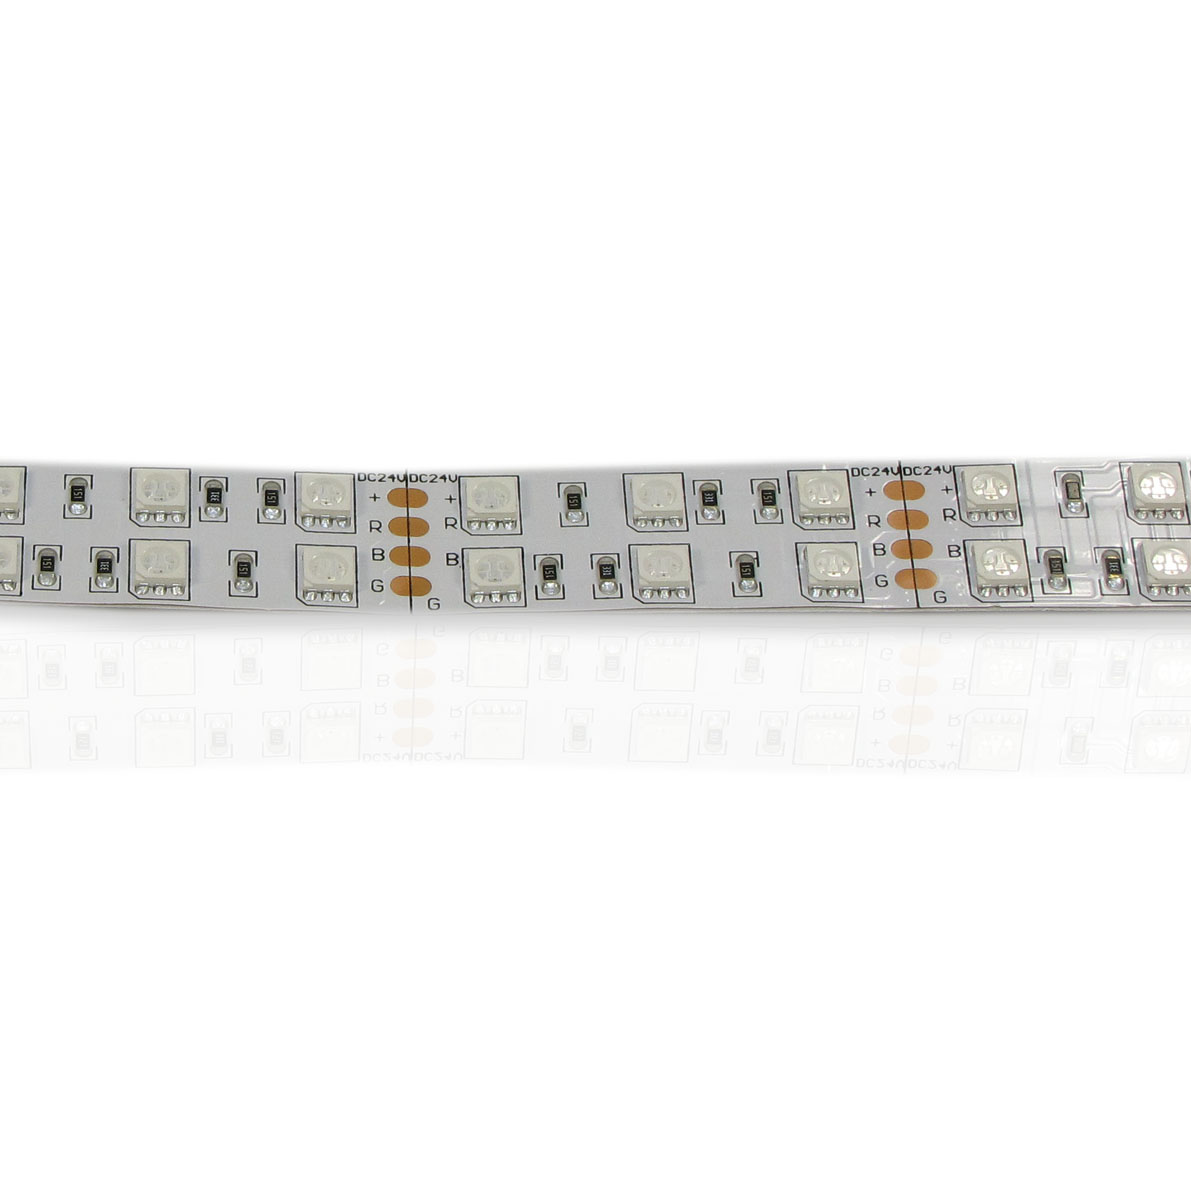 светодиодная лента standart pro class, 5050, 120 led/m, rgb, 24v, ip33, артикул 52006